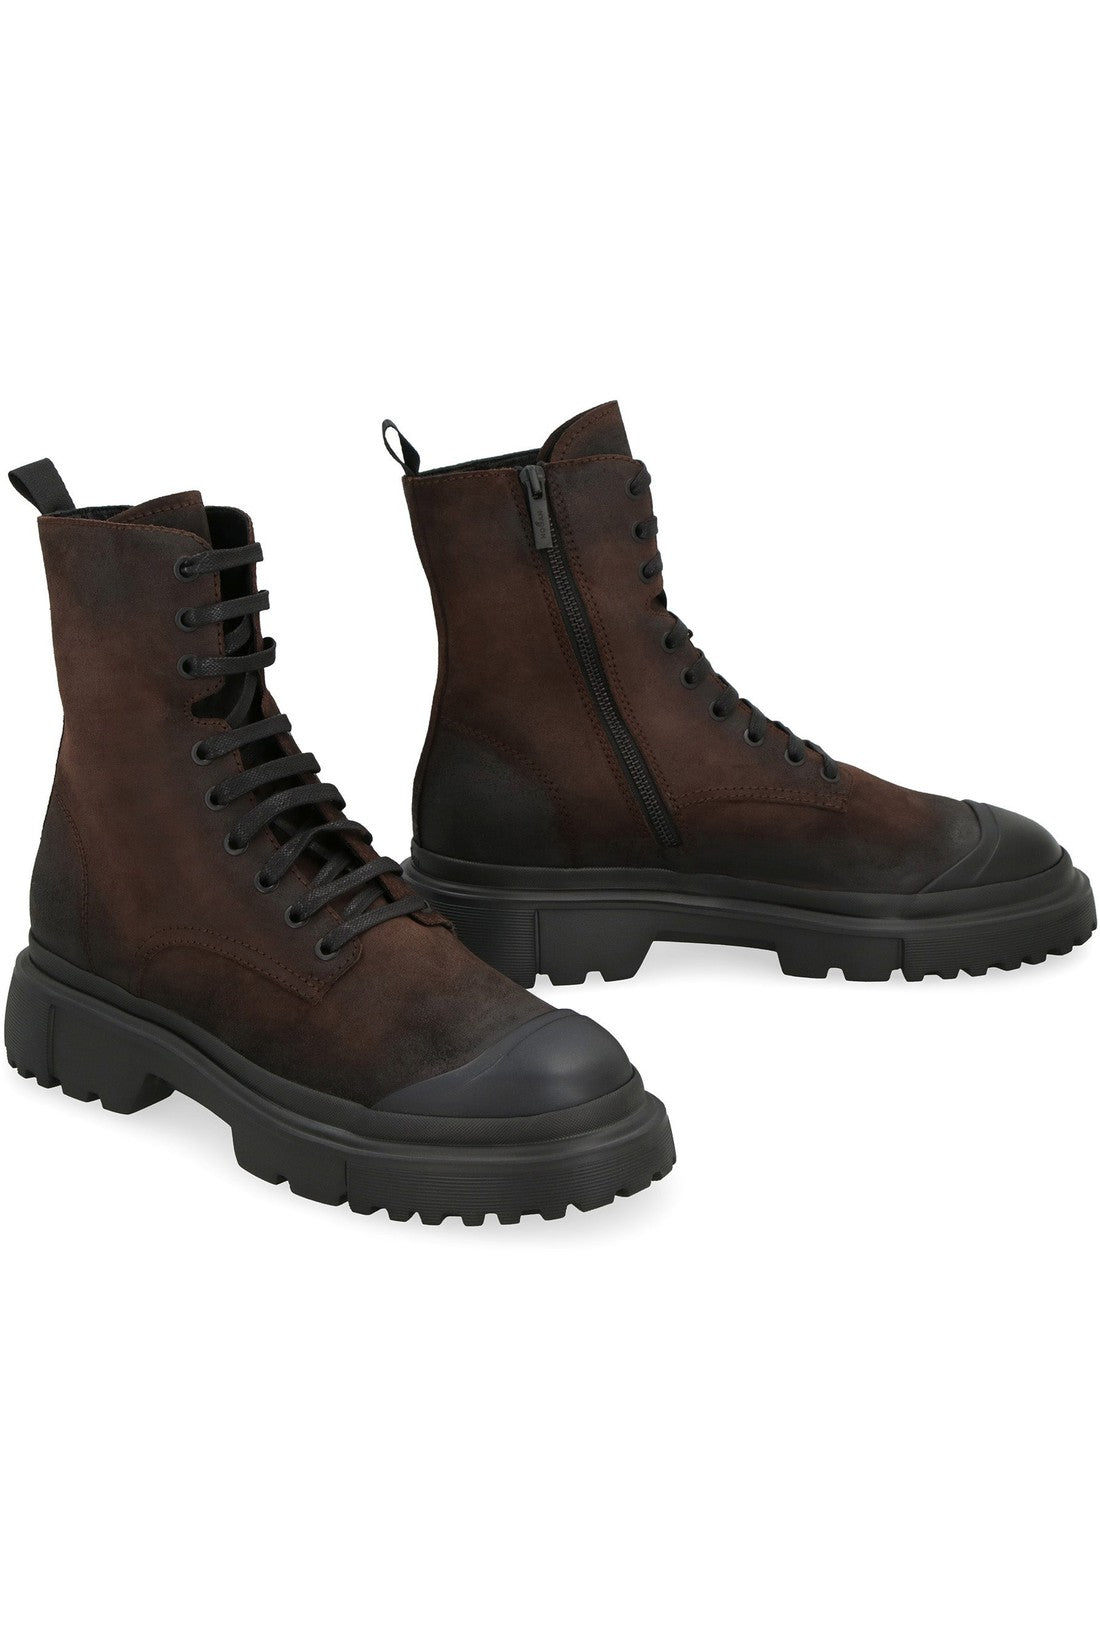 Hogan-OUTLET-SALE-Hogan H619 leather combat boots-ARCHIVIST